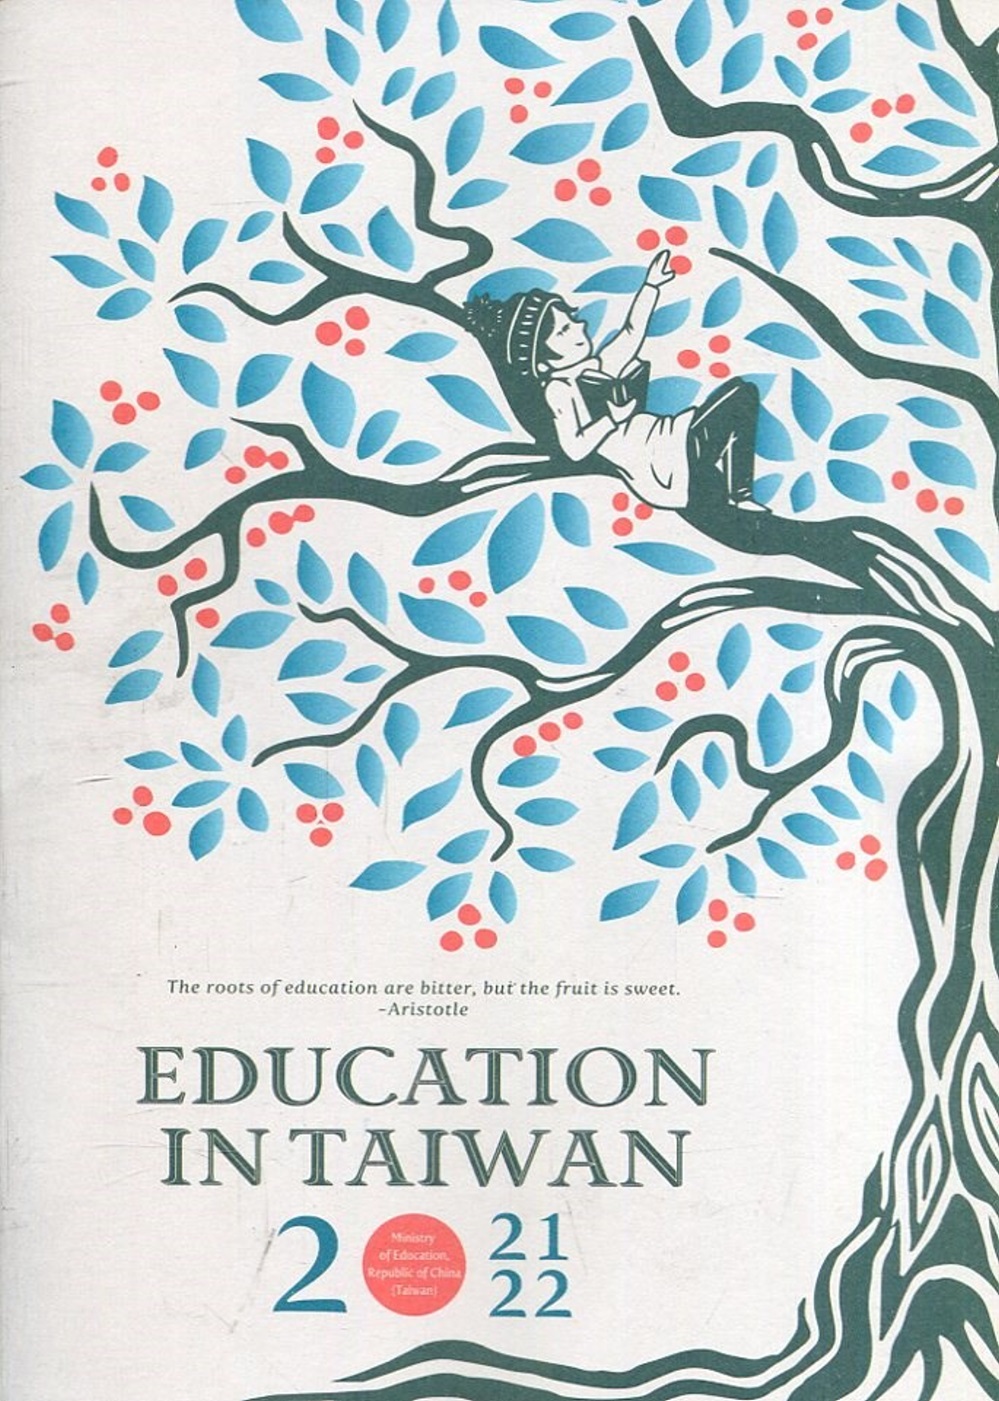 Education in Taiwan 2021-2022